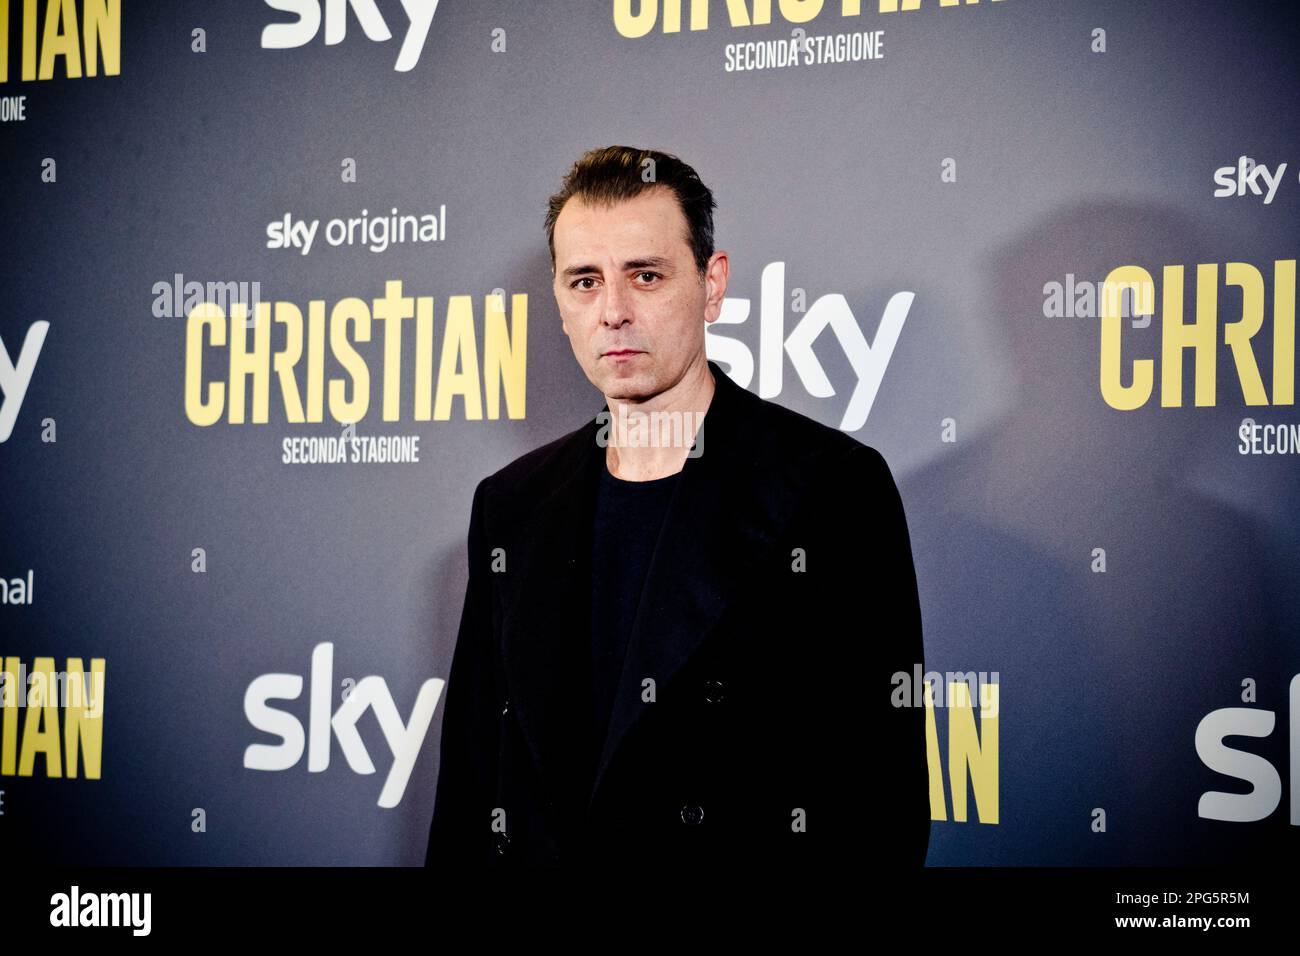 Rome, Italy, 20th March 2023, Giordano De Plano attends the premiere of 'Christian - seconda stagione' at Cinema Barberini (Photo credits: Giovanna On Stock Photo